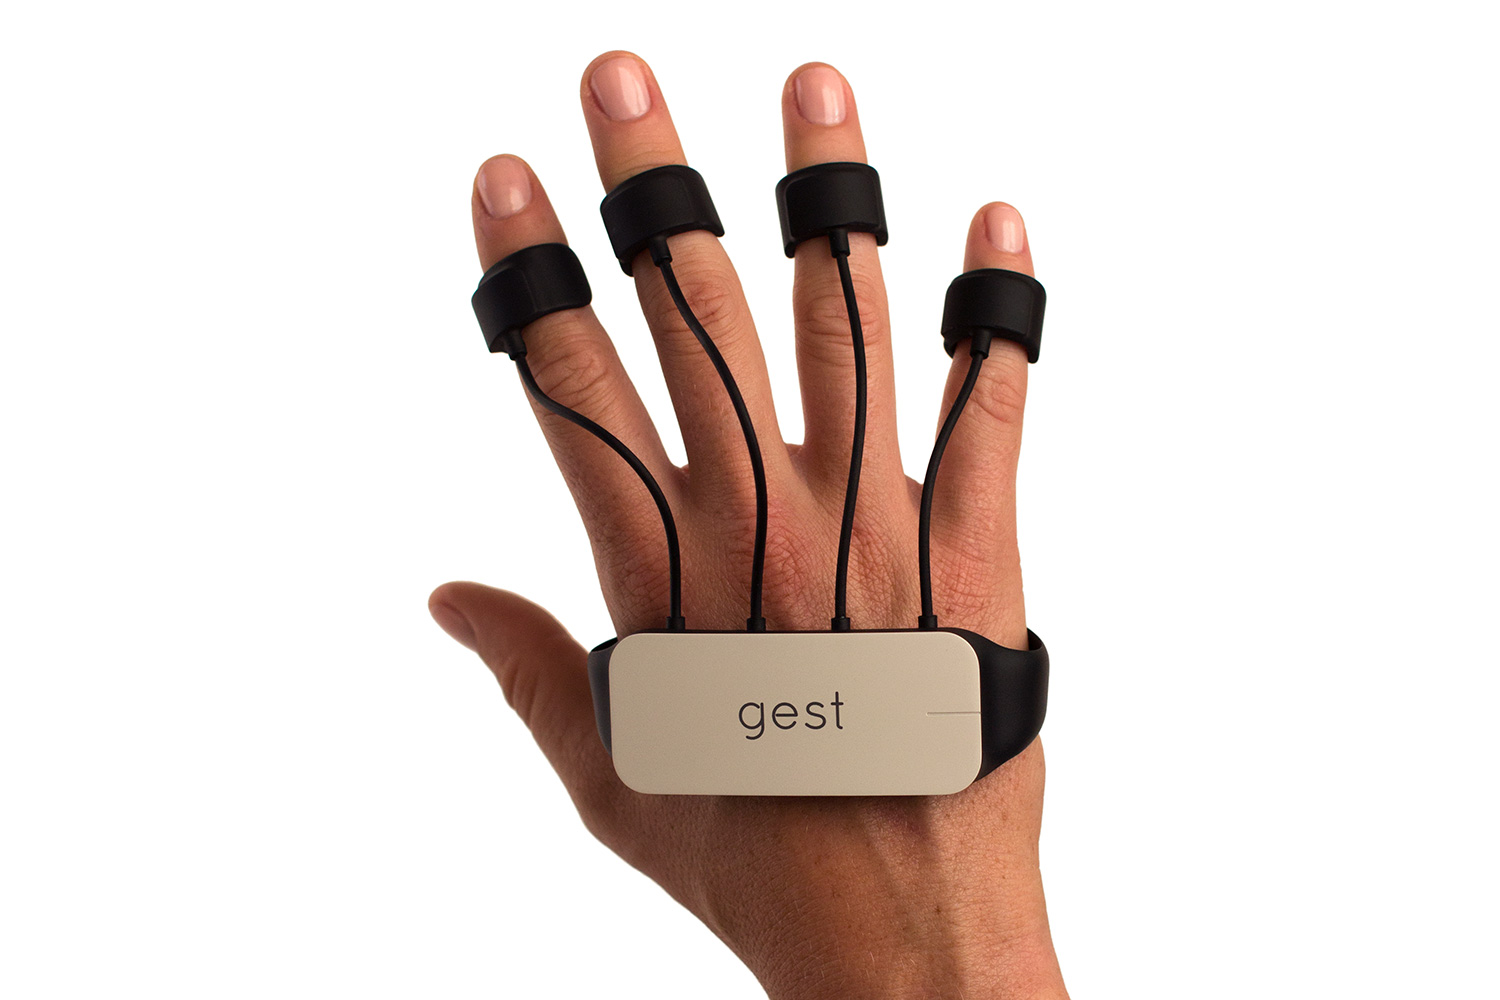 gest gesture sensing glove kickstarter white